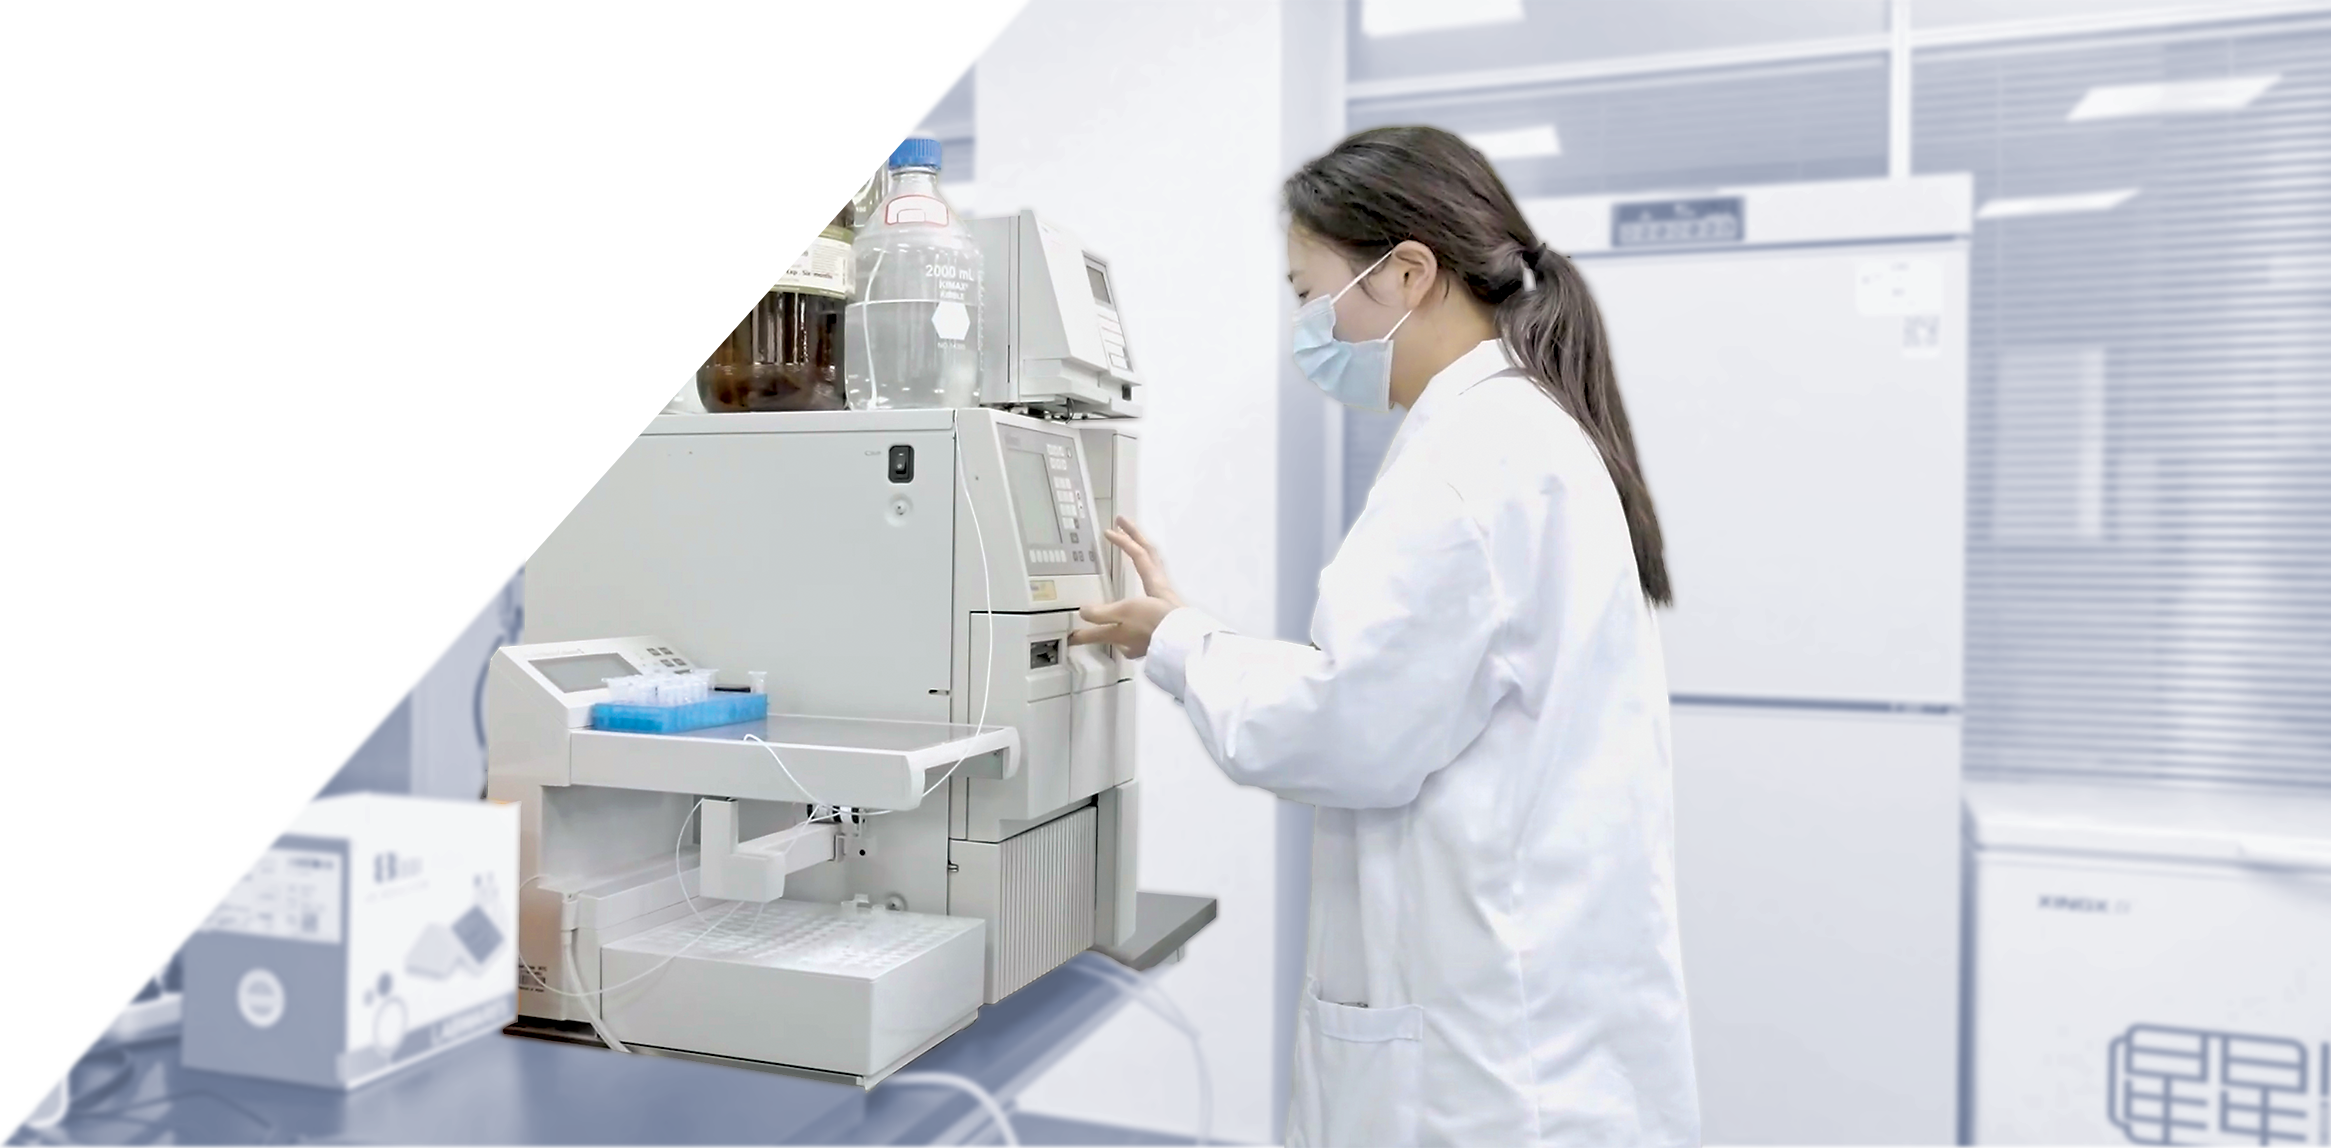 Female scientist operating analysis machine